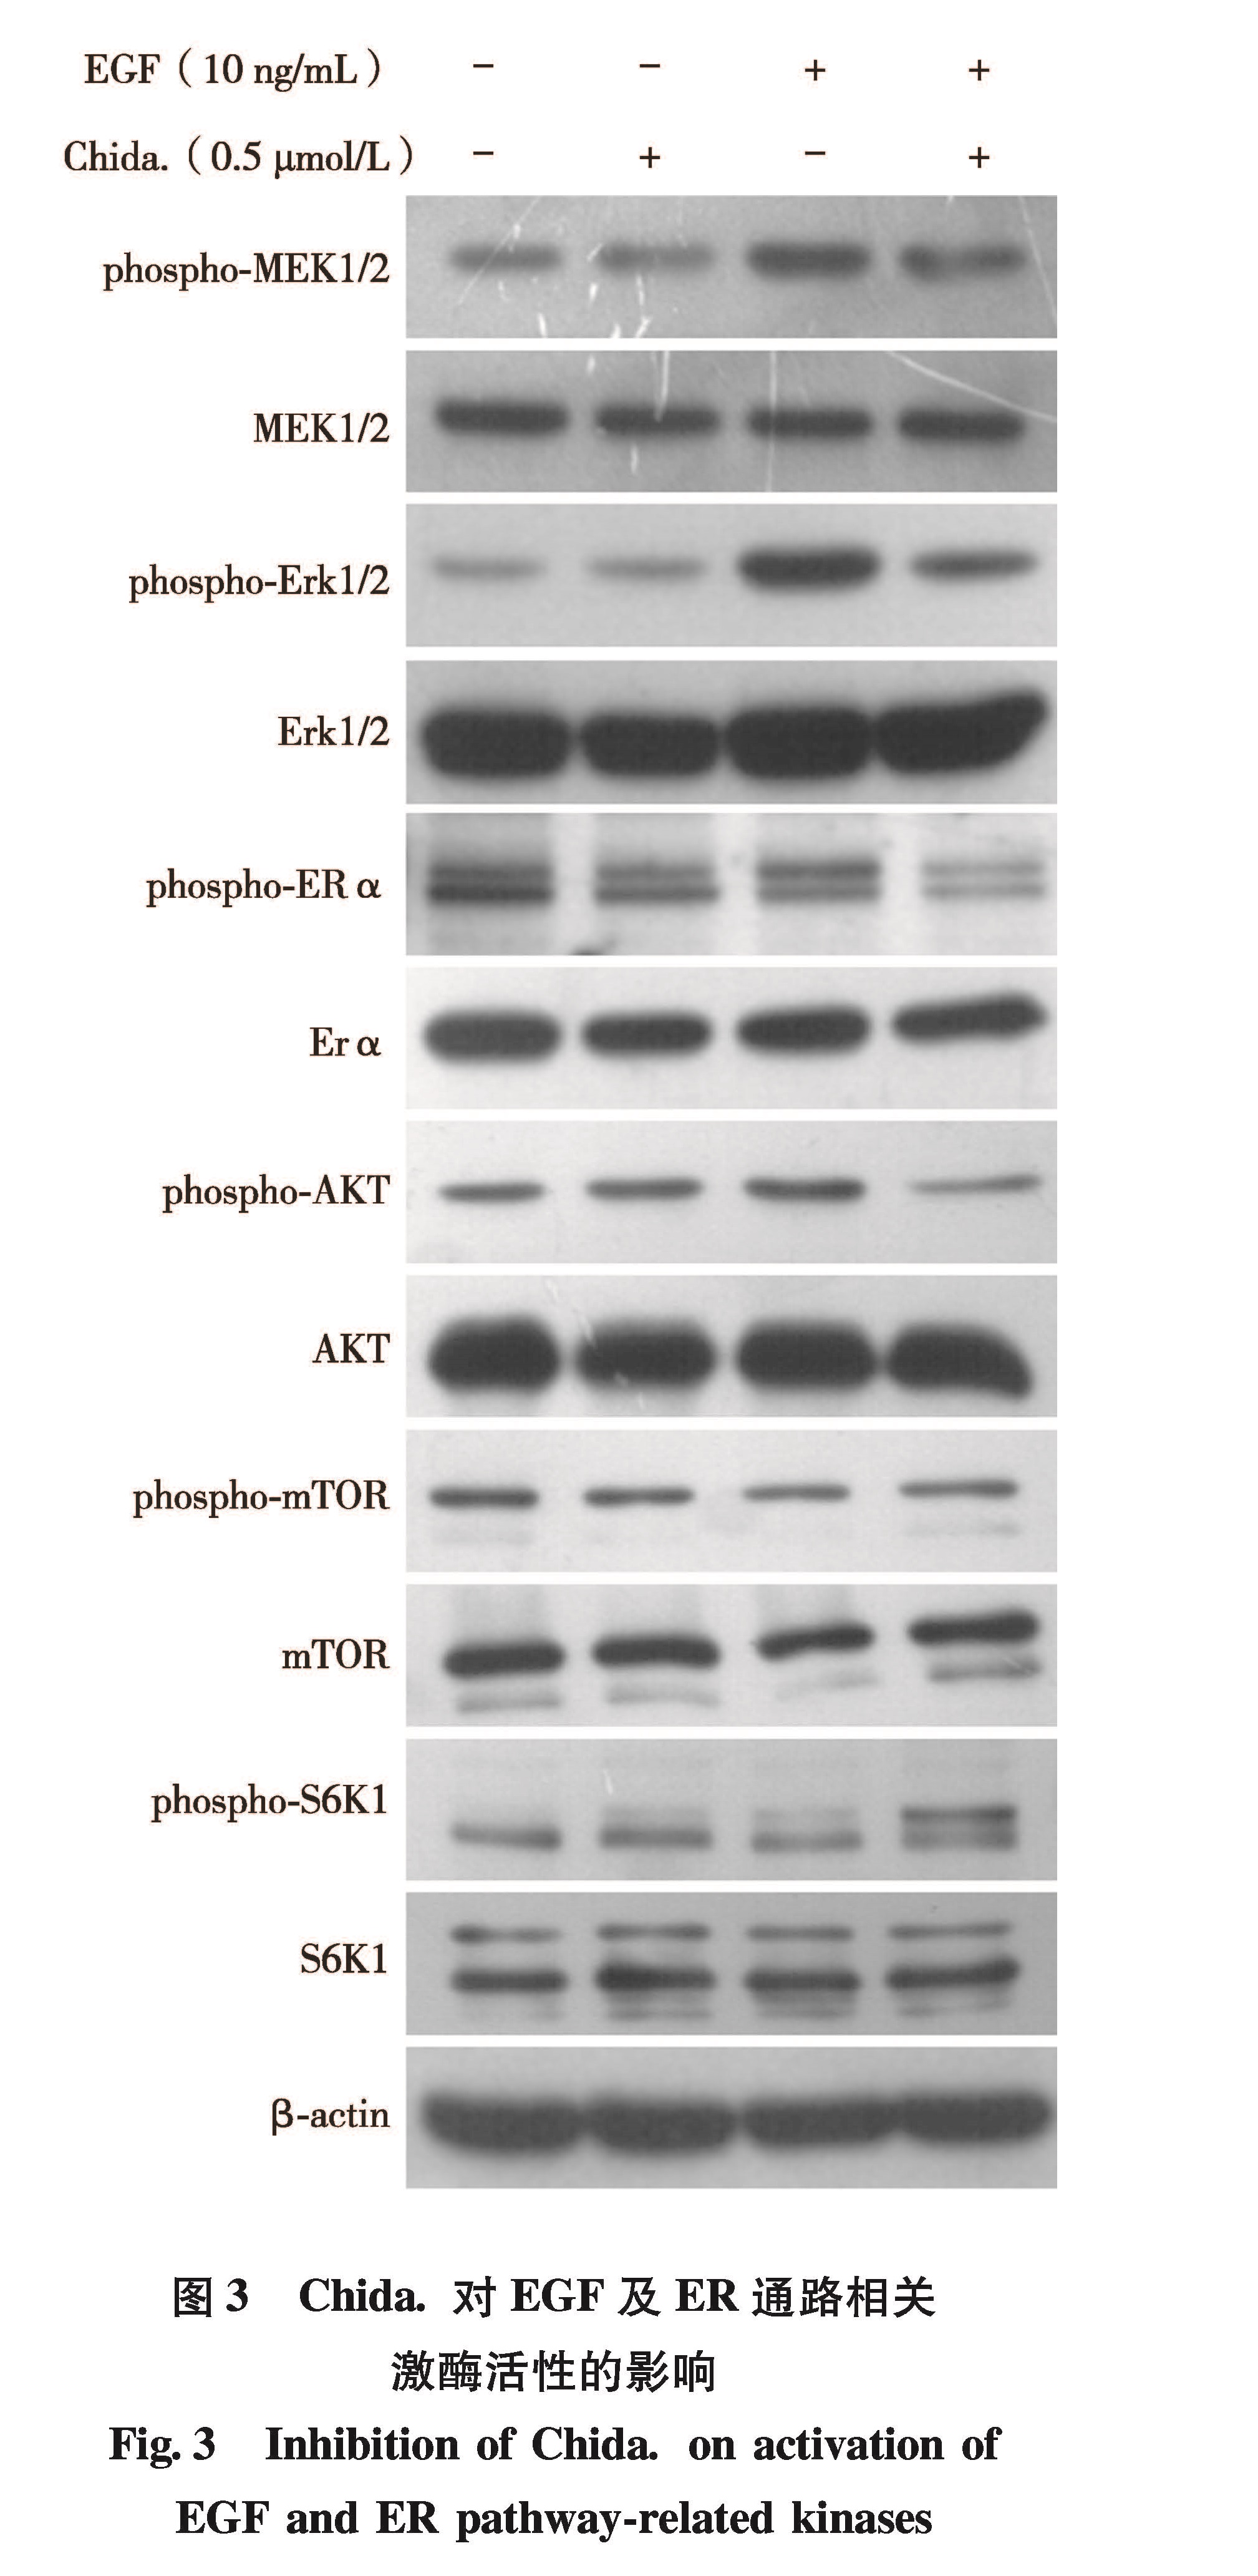 图3 Chida.对EGF及ER通路相关激酶活性的影响<br/>Fig.3 Inhibition of Chida. on activation of EGF and ER pathway-related kinases